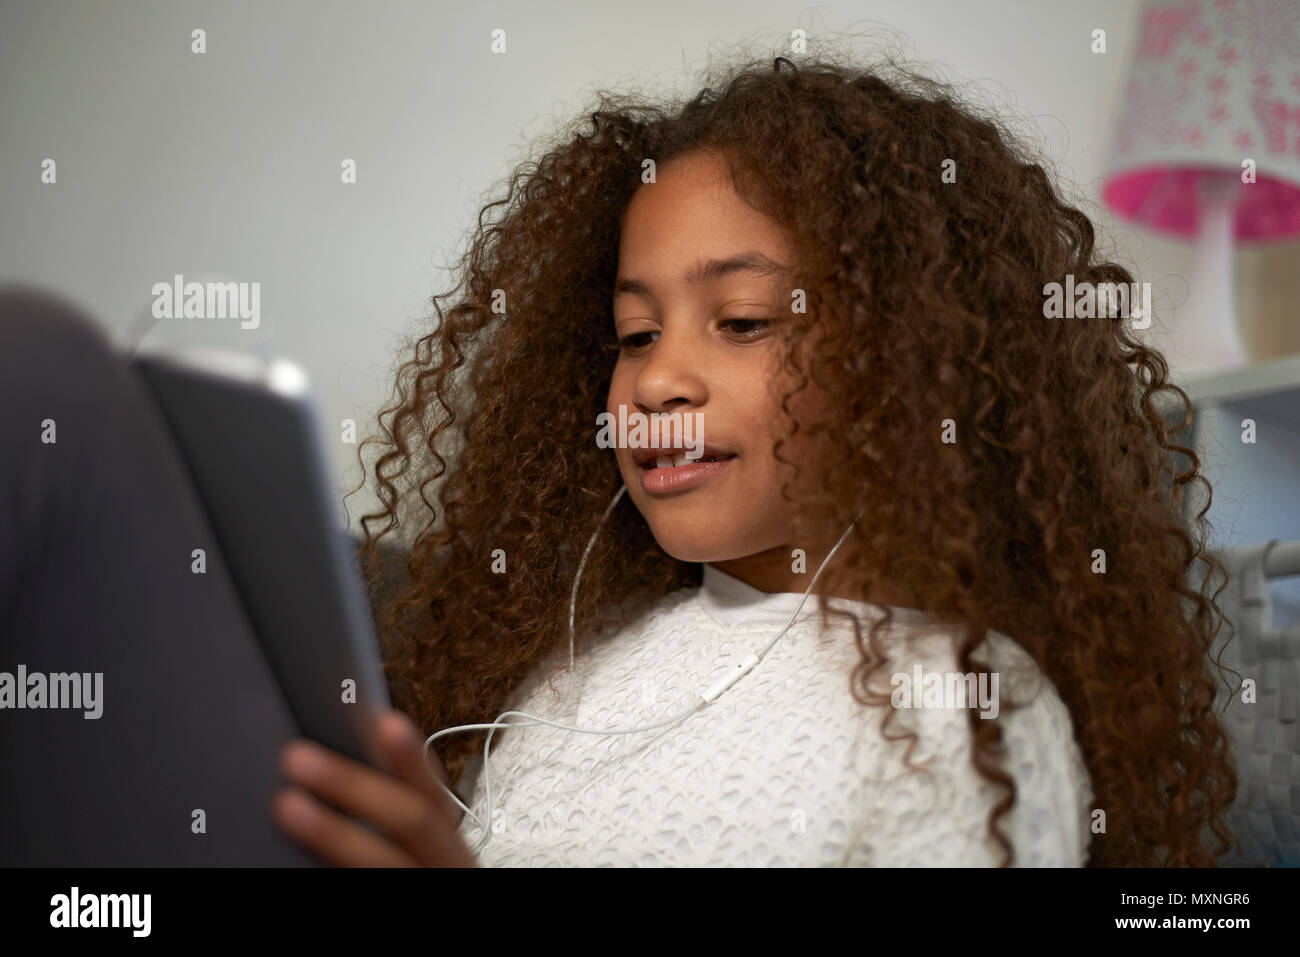 Portrait einer jungen Jugendlichen Mixed Race Mädchen mit grossen lockiges  Haar an Kamera suchen Stockfotografie - Alamy